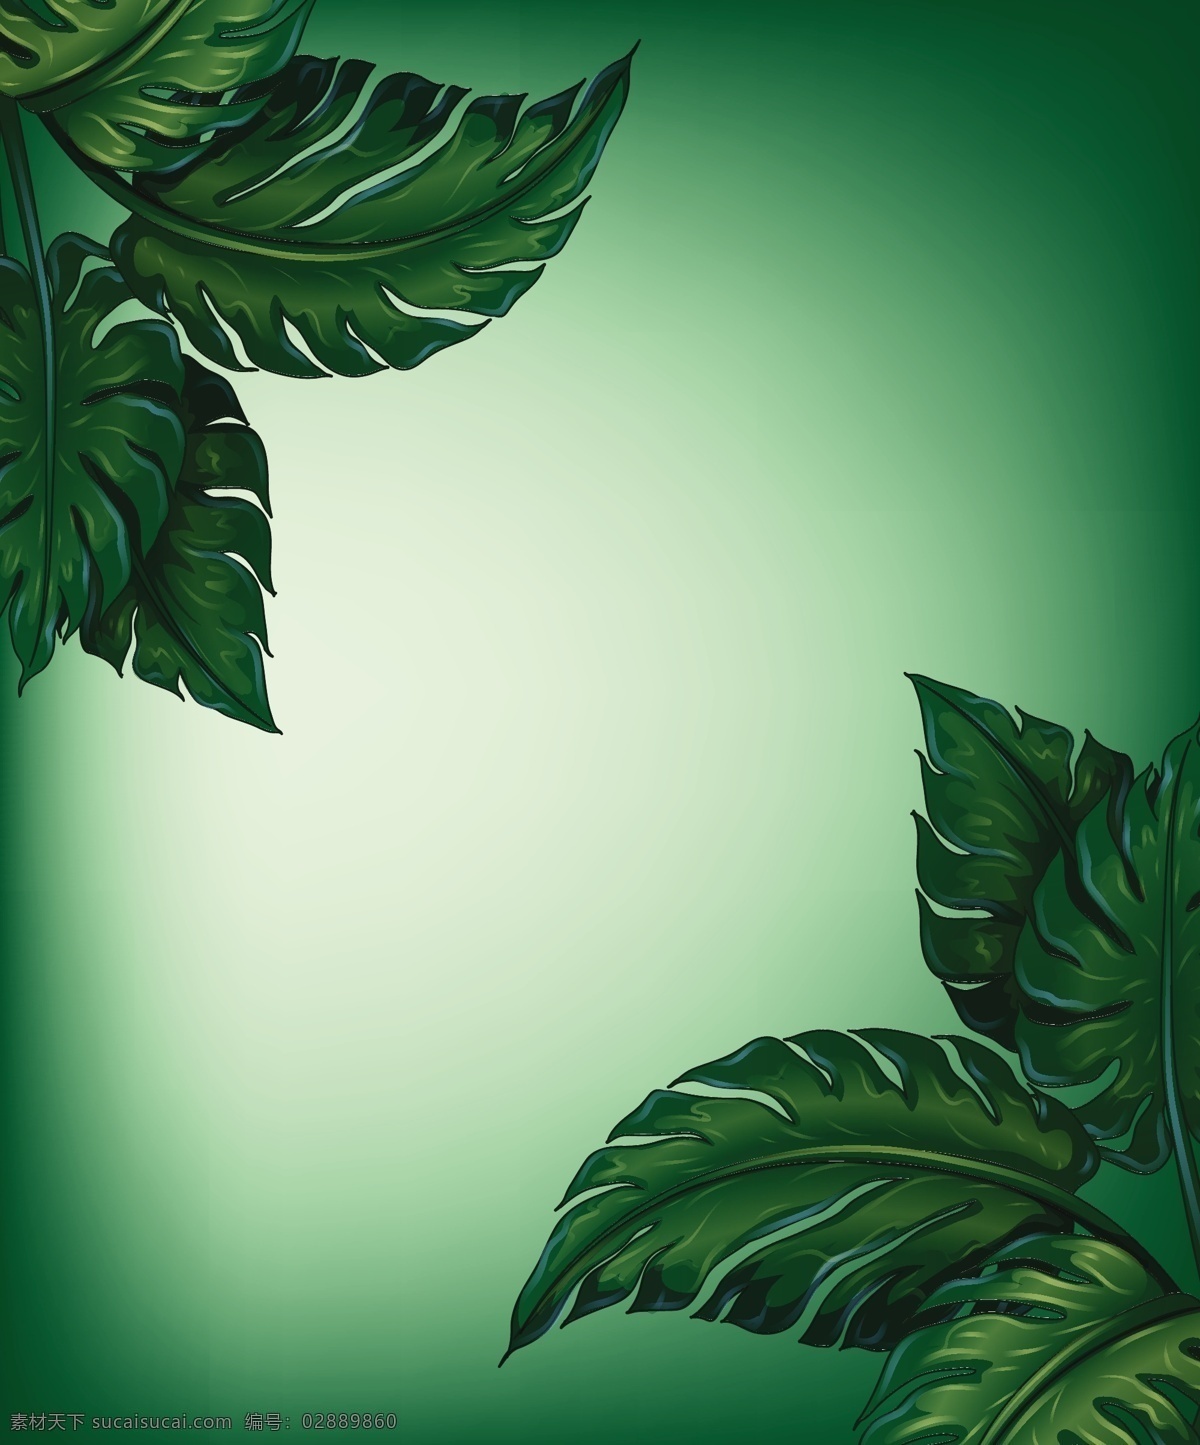 绿色的叶子 旗帜 卡片 纹理 边界 纸张 绿色 卡通 图形设计 树叶 图形 符号 形状 装饰 纸张纹理 绘图 插图 曲线 设计元素